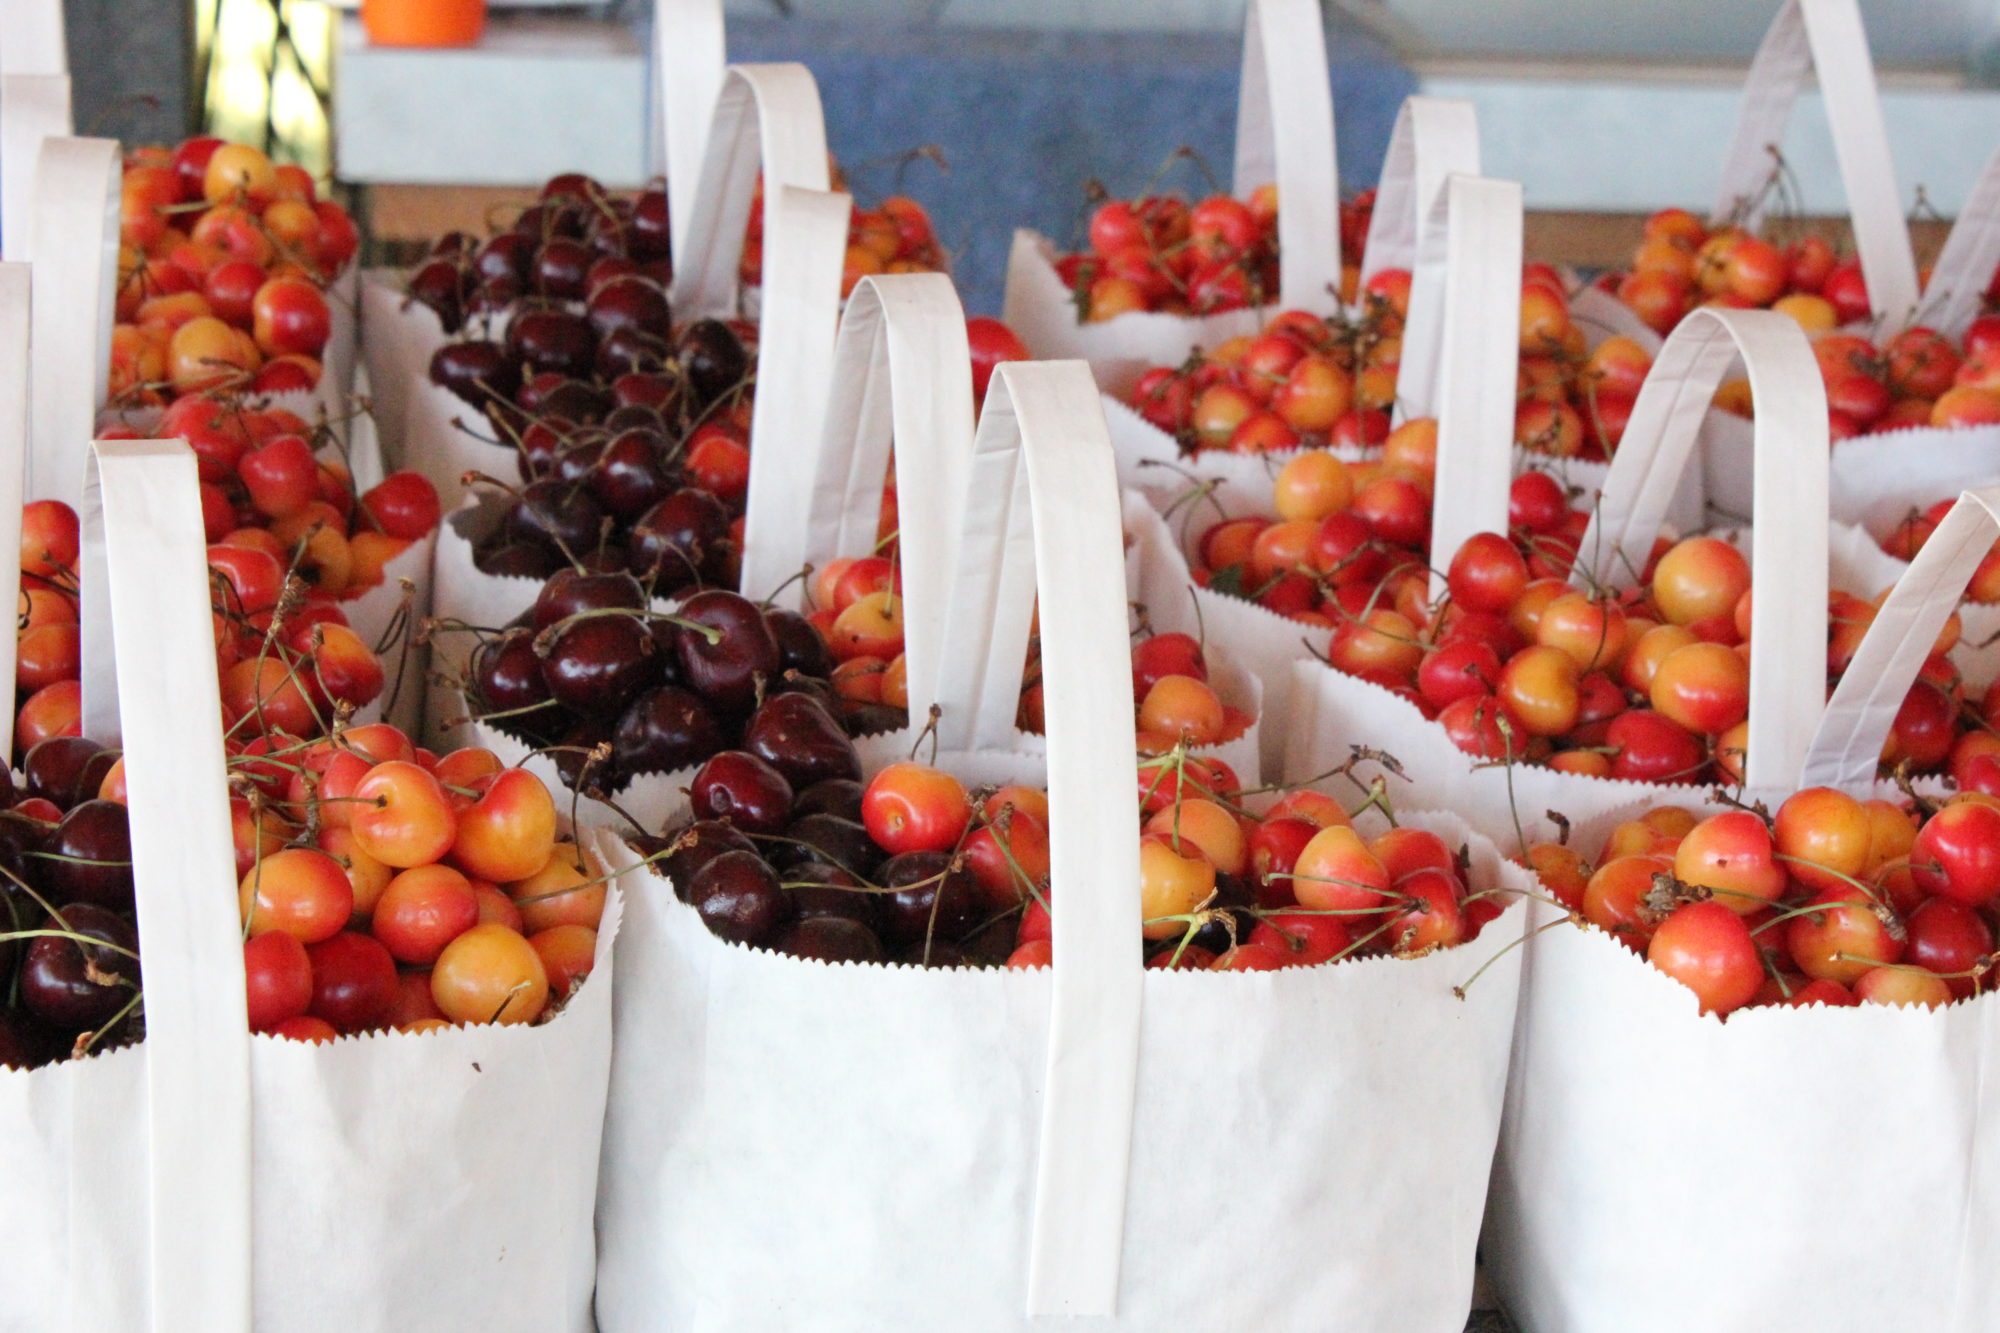 Variety of cherries in bags